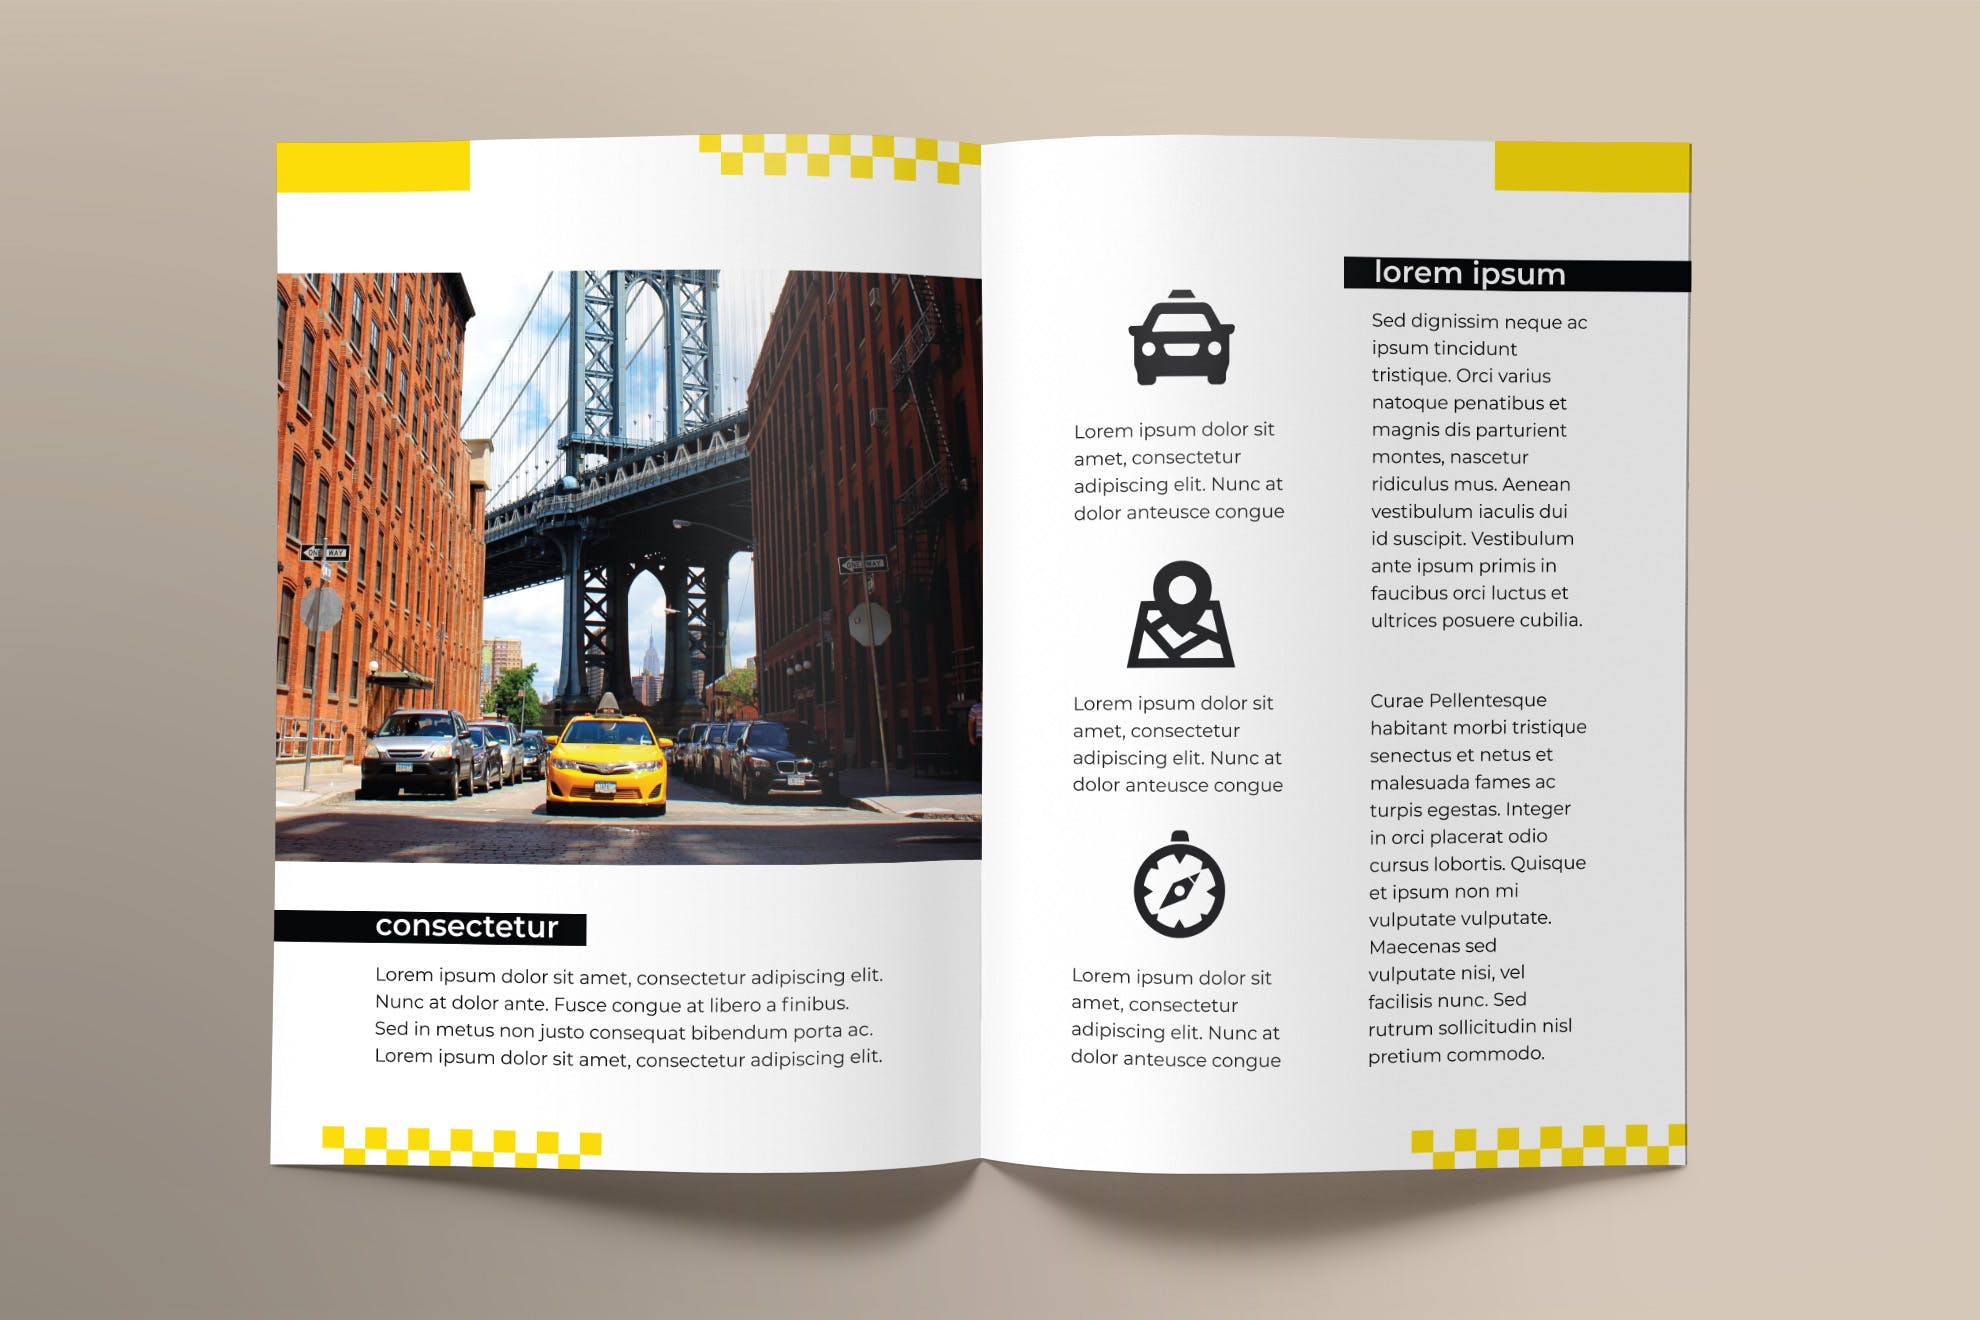 出租车/网约车服务对折宣传册设计模板 Taxi Services Brochure Bifold插图(2)